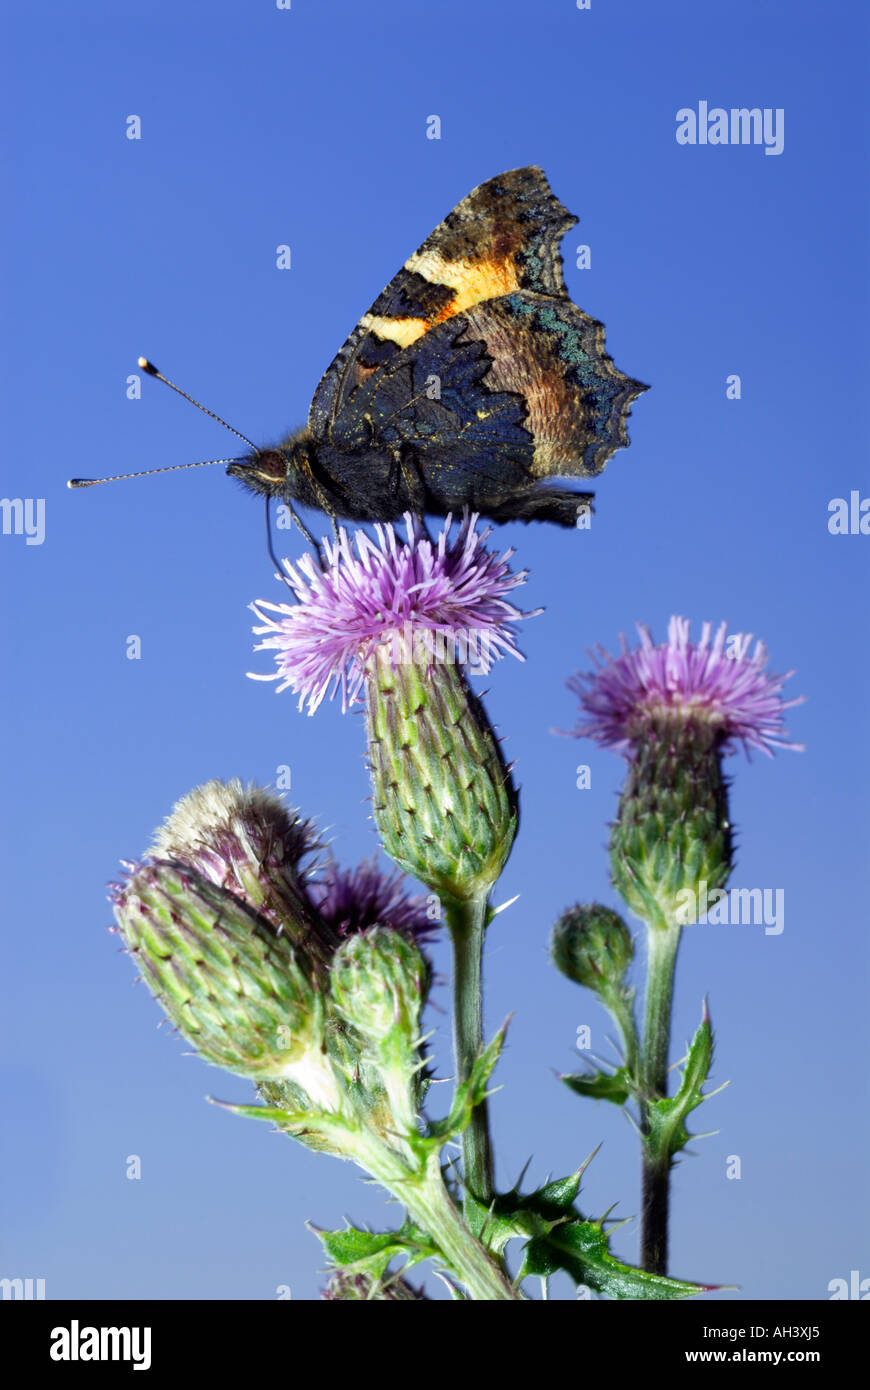 'Small' écaille avec ailes de papillon fermé l'alimentation sur thistle flower Banque D'Images